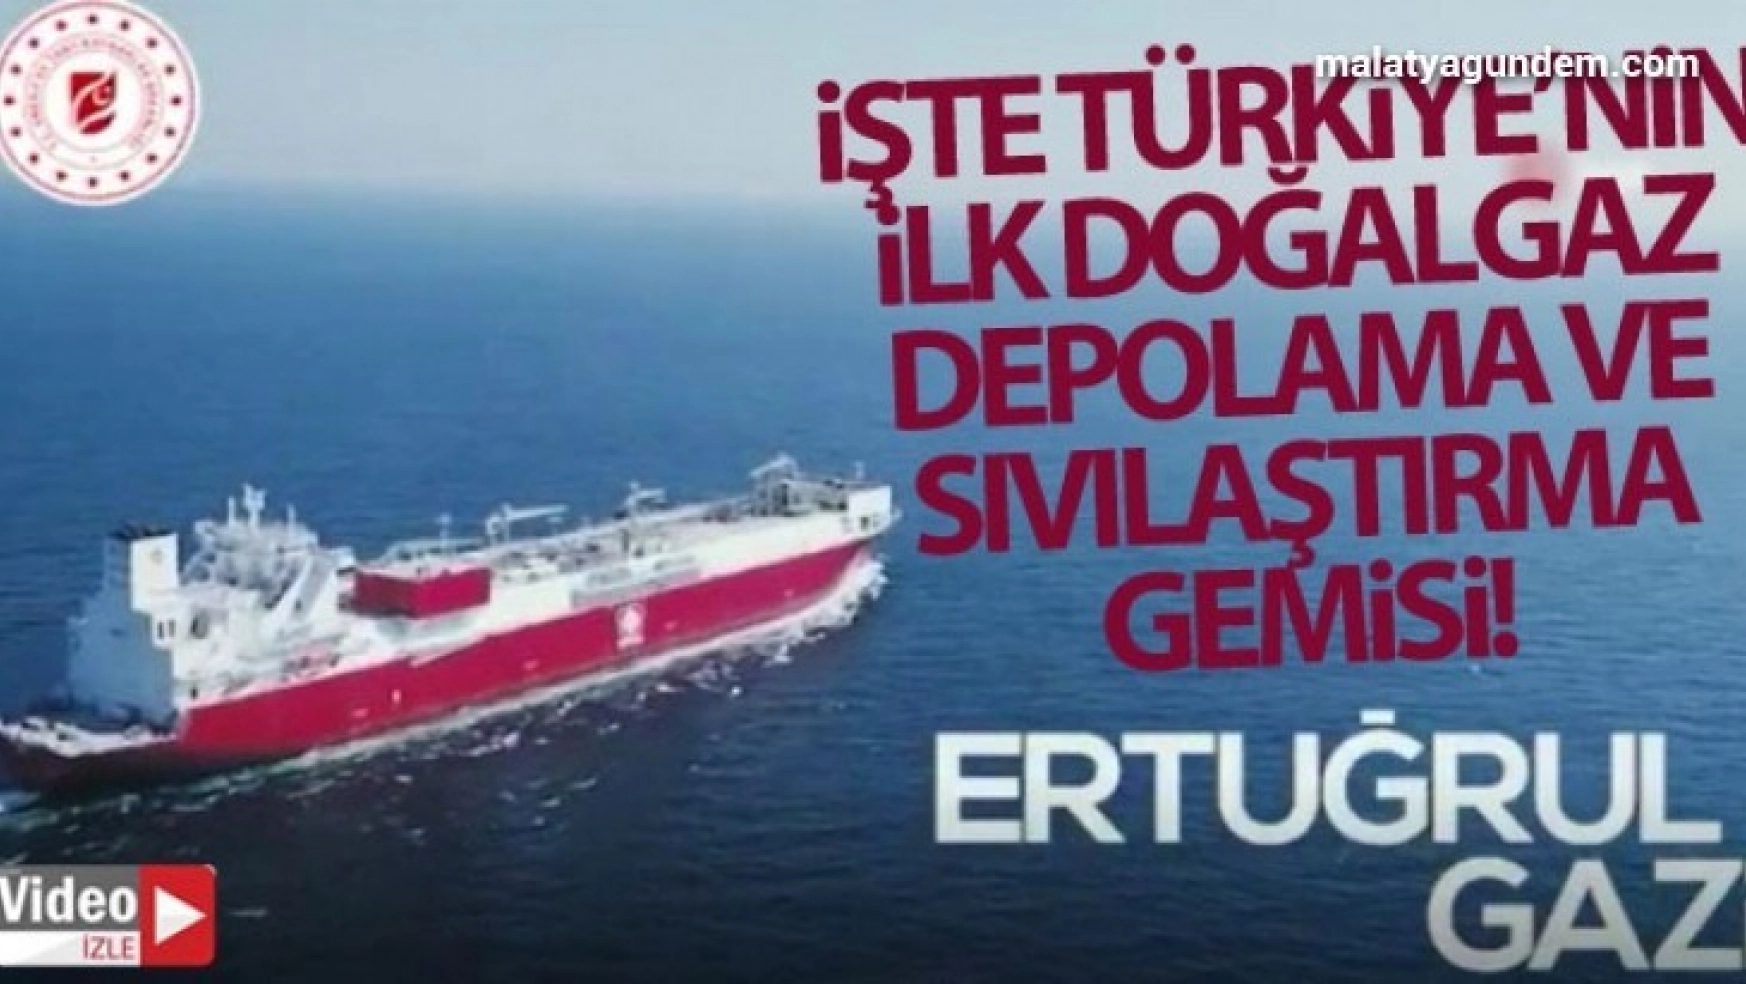 Bakan Dönmez açıkladı: İlk doğalgaz depolama ve sıvılaştırma gemisi Türkiye'de